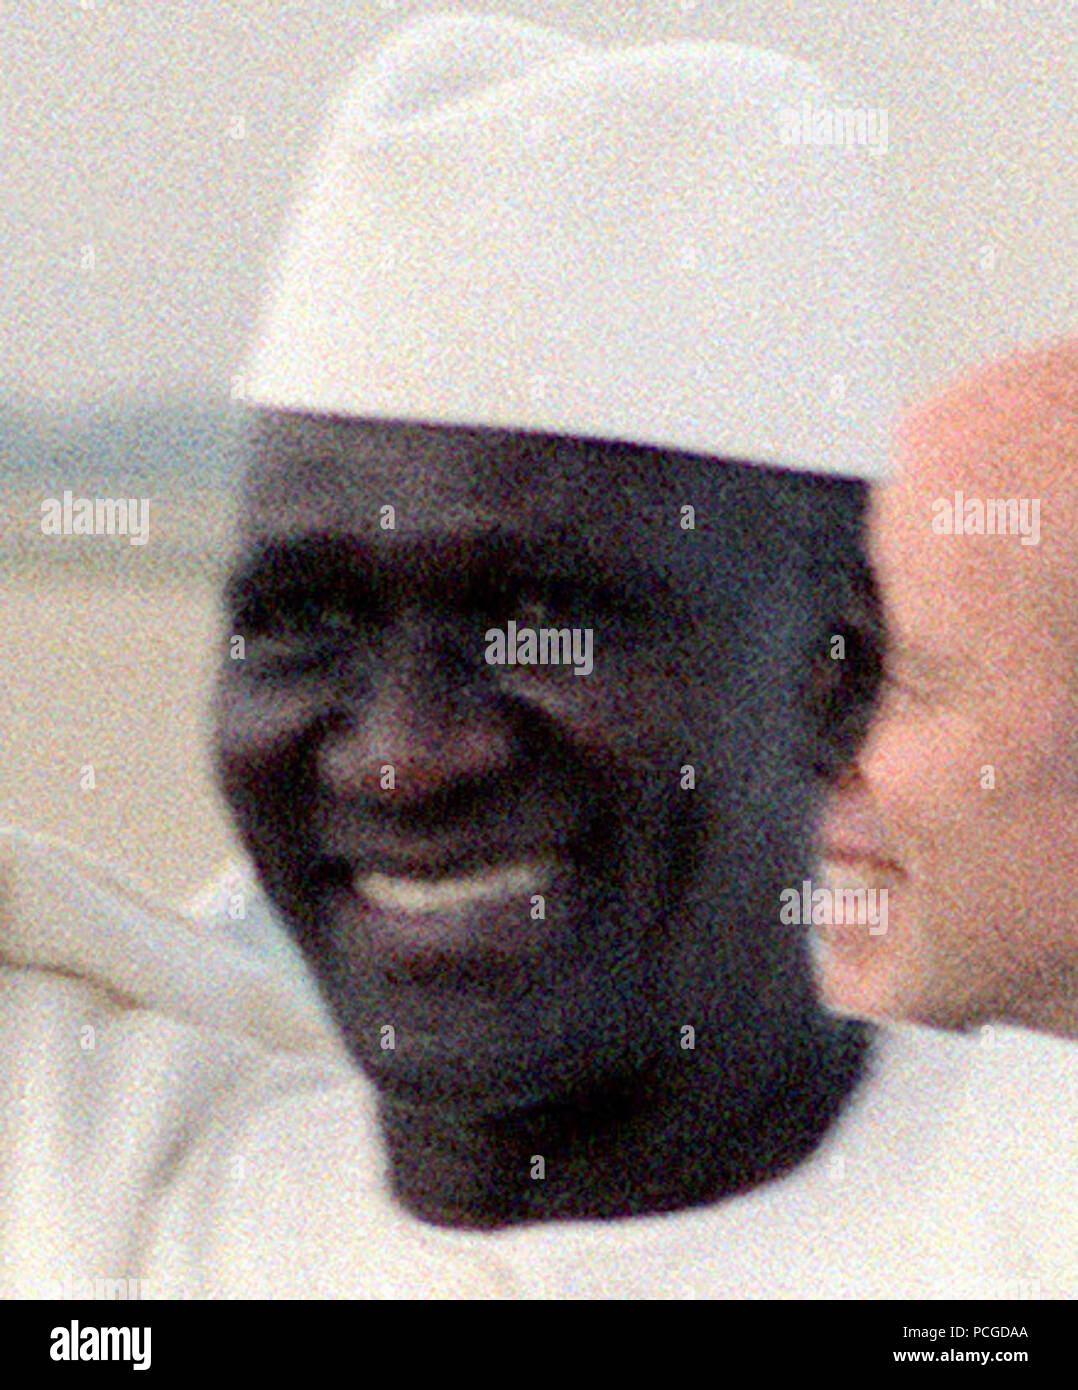 Präsident Ahmed Sekou Toure der Republik Guinea kommt zu einem Besuch nach Washington D.C. Stockfoto